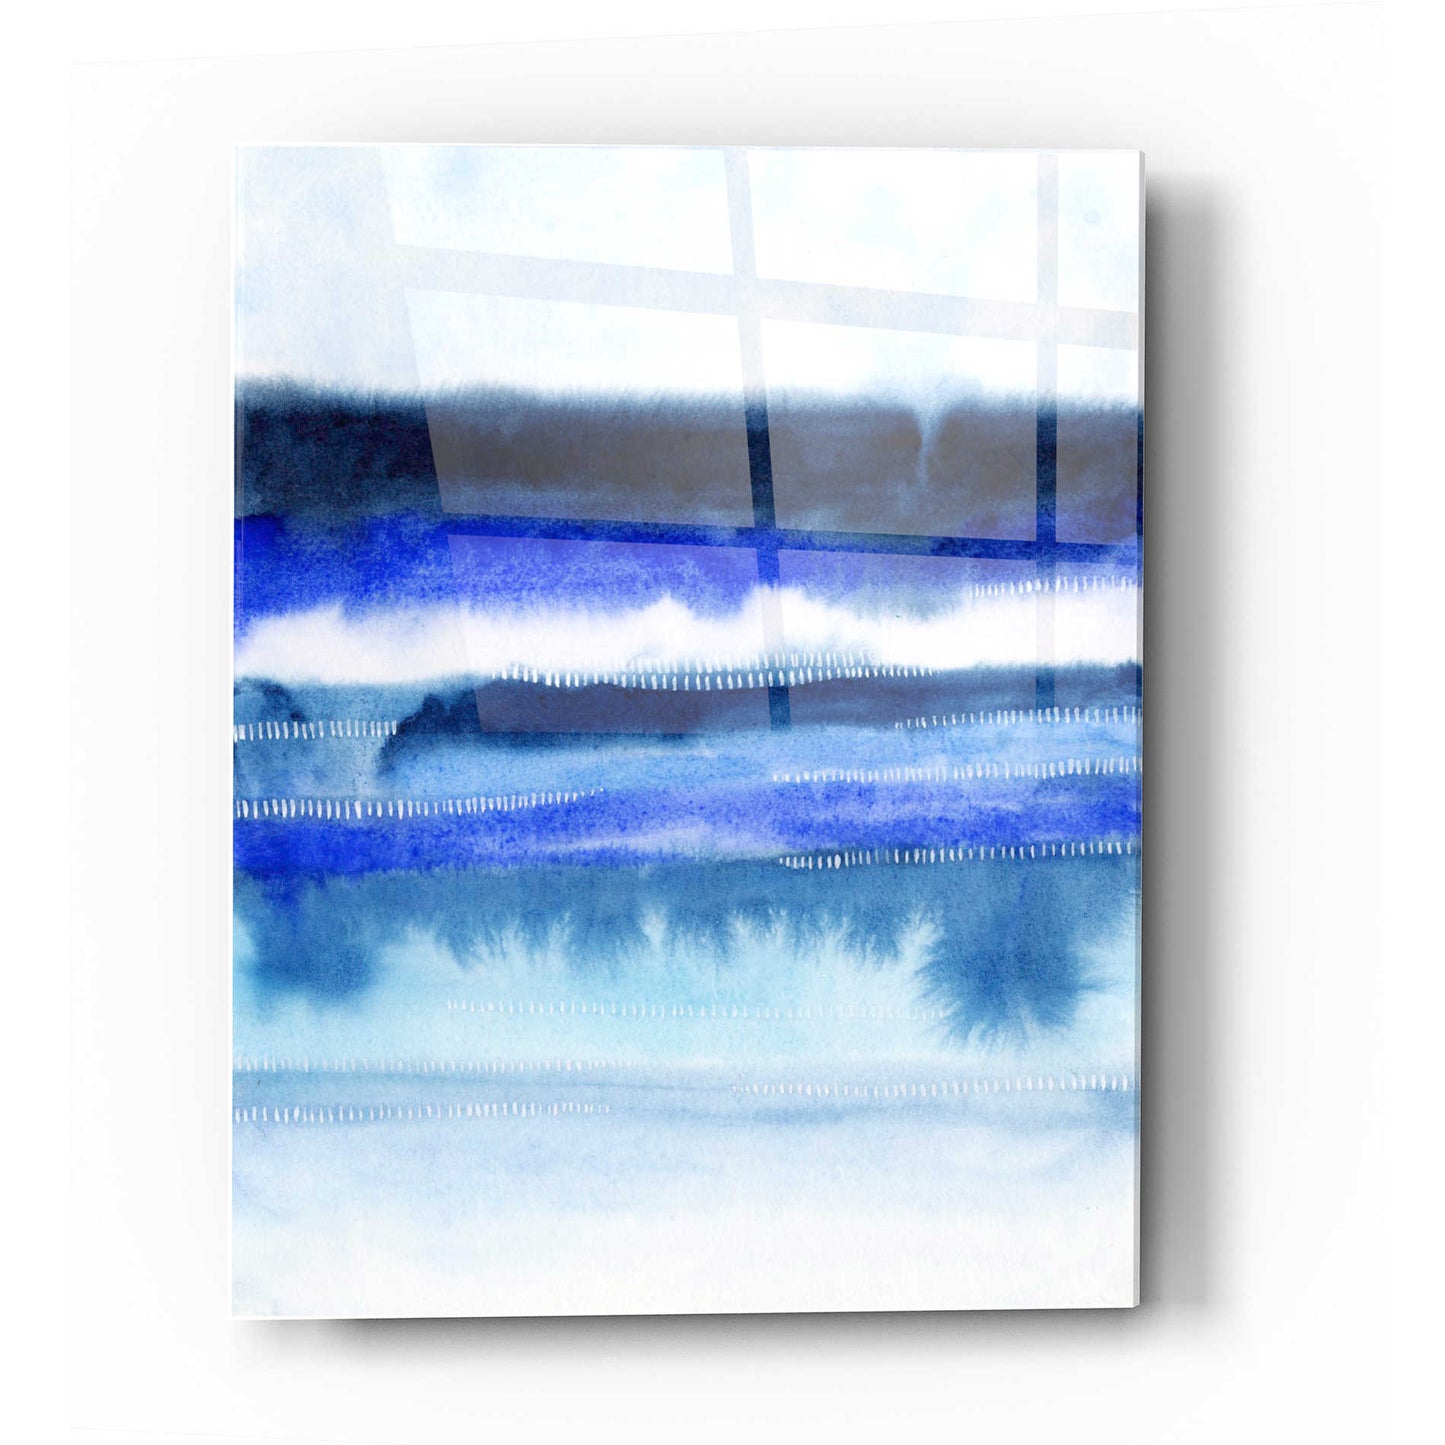 Epic Art 'Shorebreak Abstract II' by Grace Popp Acrylic Glass Wall Art,12x16